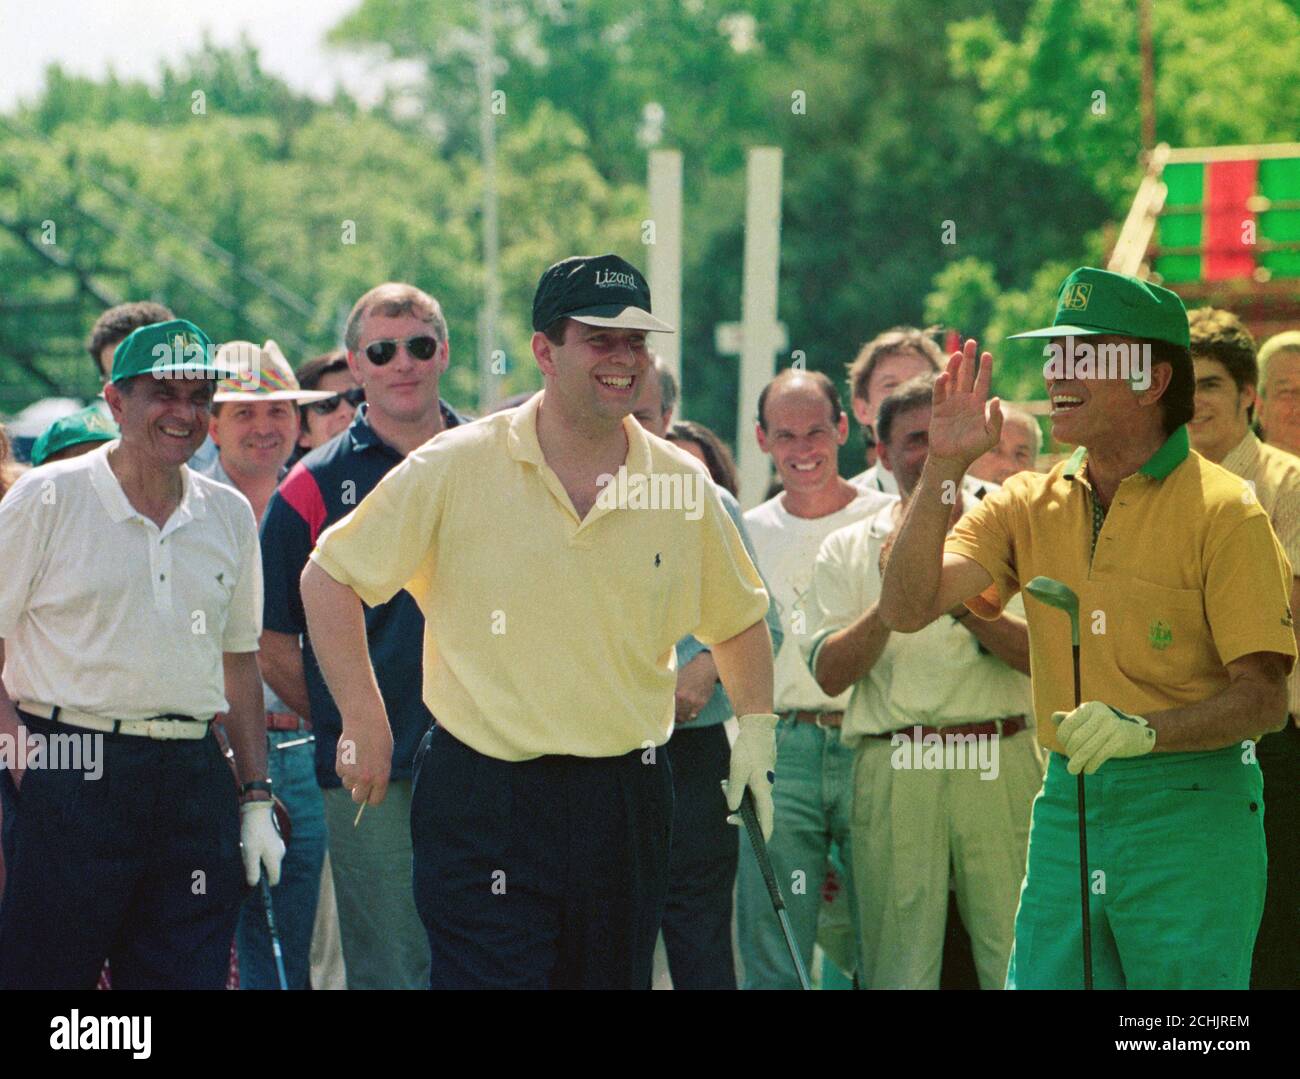 Le duc d'York de Grande-Bretagne plaisante avec le président argentin Carlos Menem sur le premier tee d'un terrain de golf près de Buenos Aires. Le Prince Andrew (l) est arrivé au pays plus tôt dans la journée pour faire la première visite officielle d'un membre de la famille royale depuis la guerre des Malouines en 1982. Banque D'Images